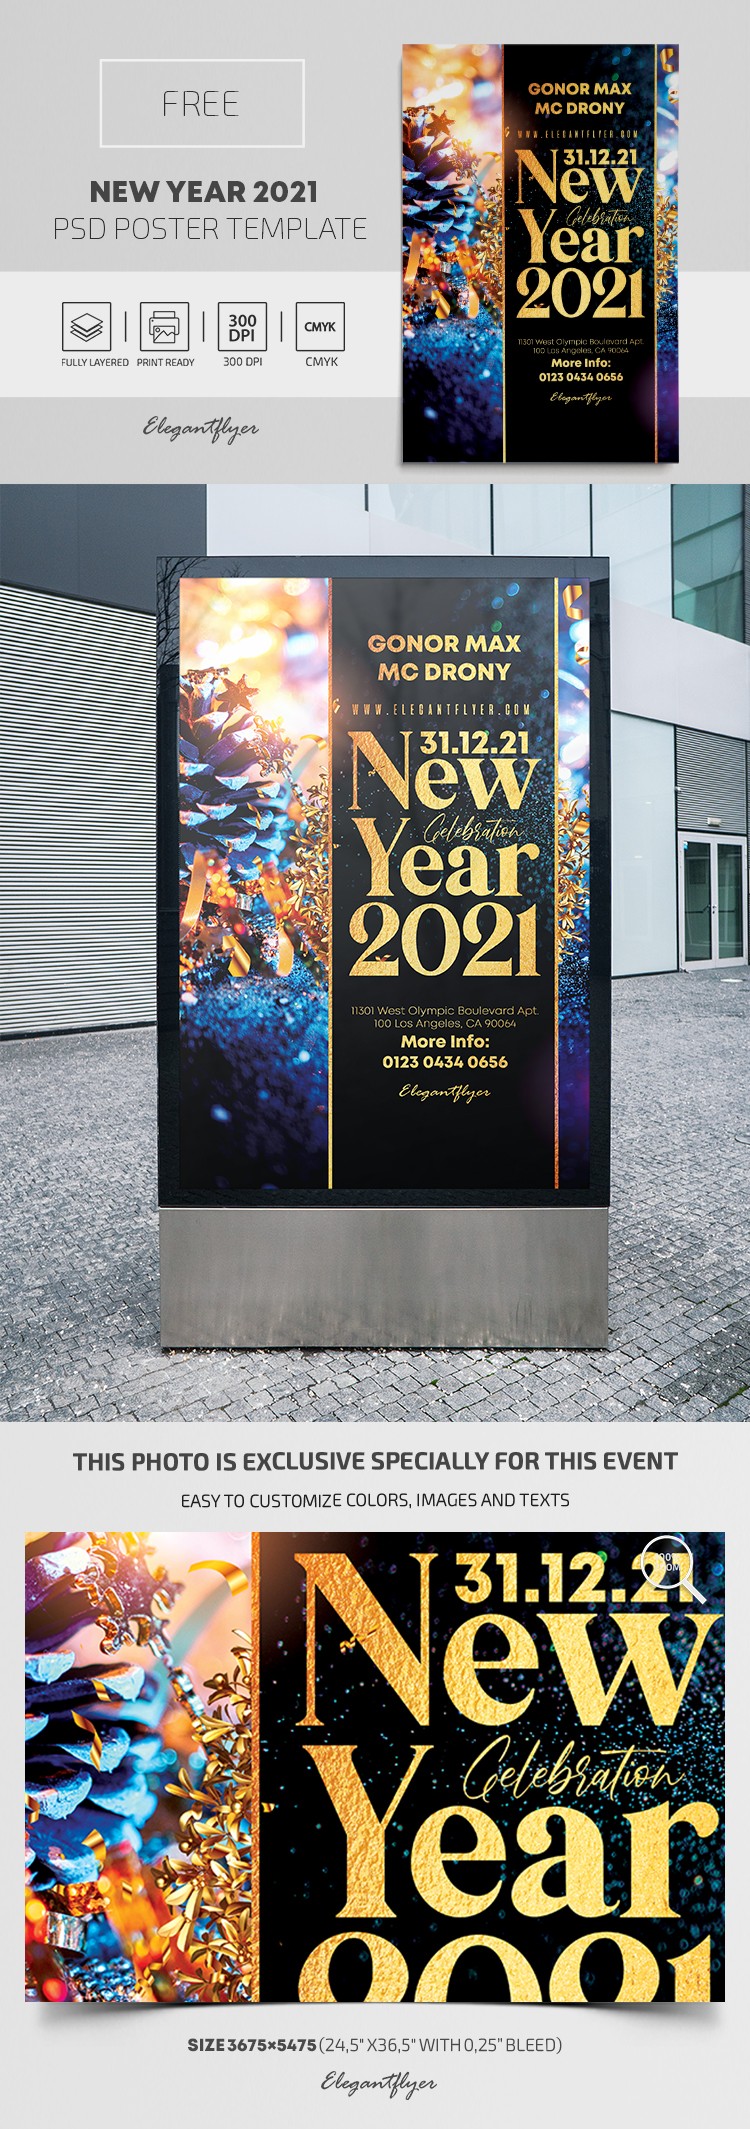 Póster de Año Nuevo 2021 by ElegantFlyer